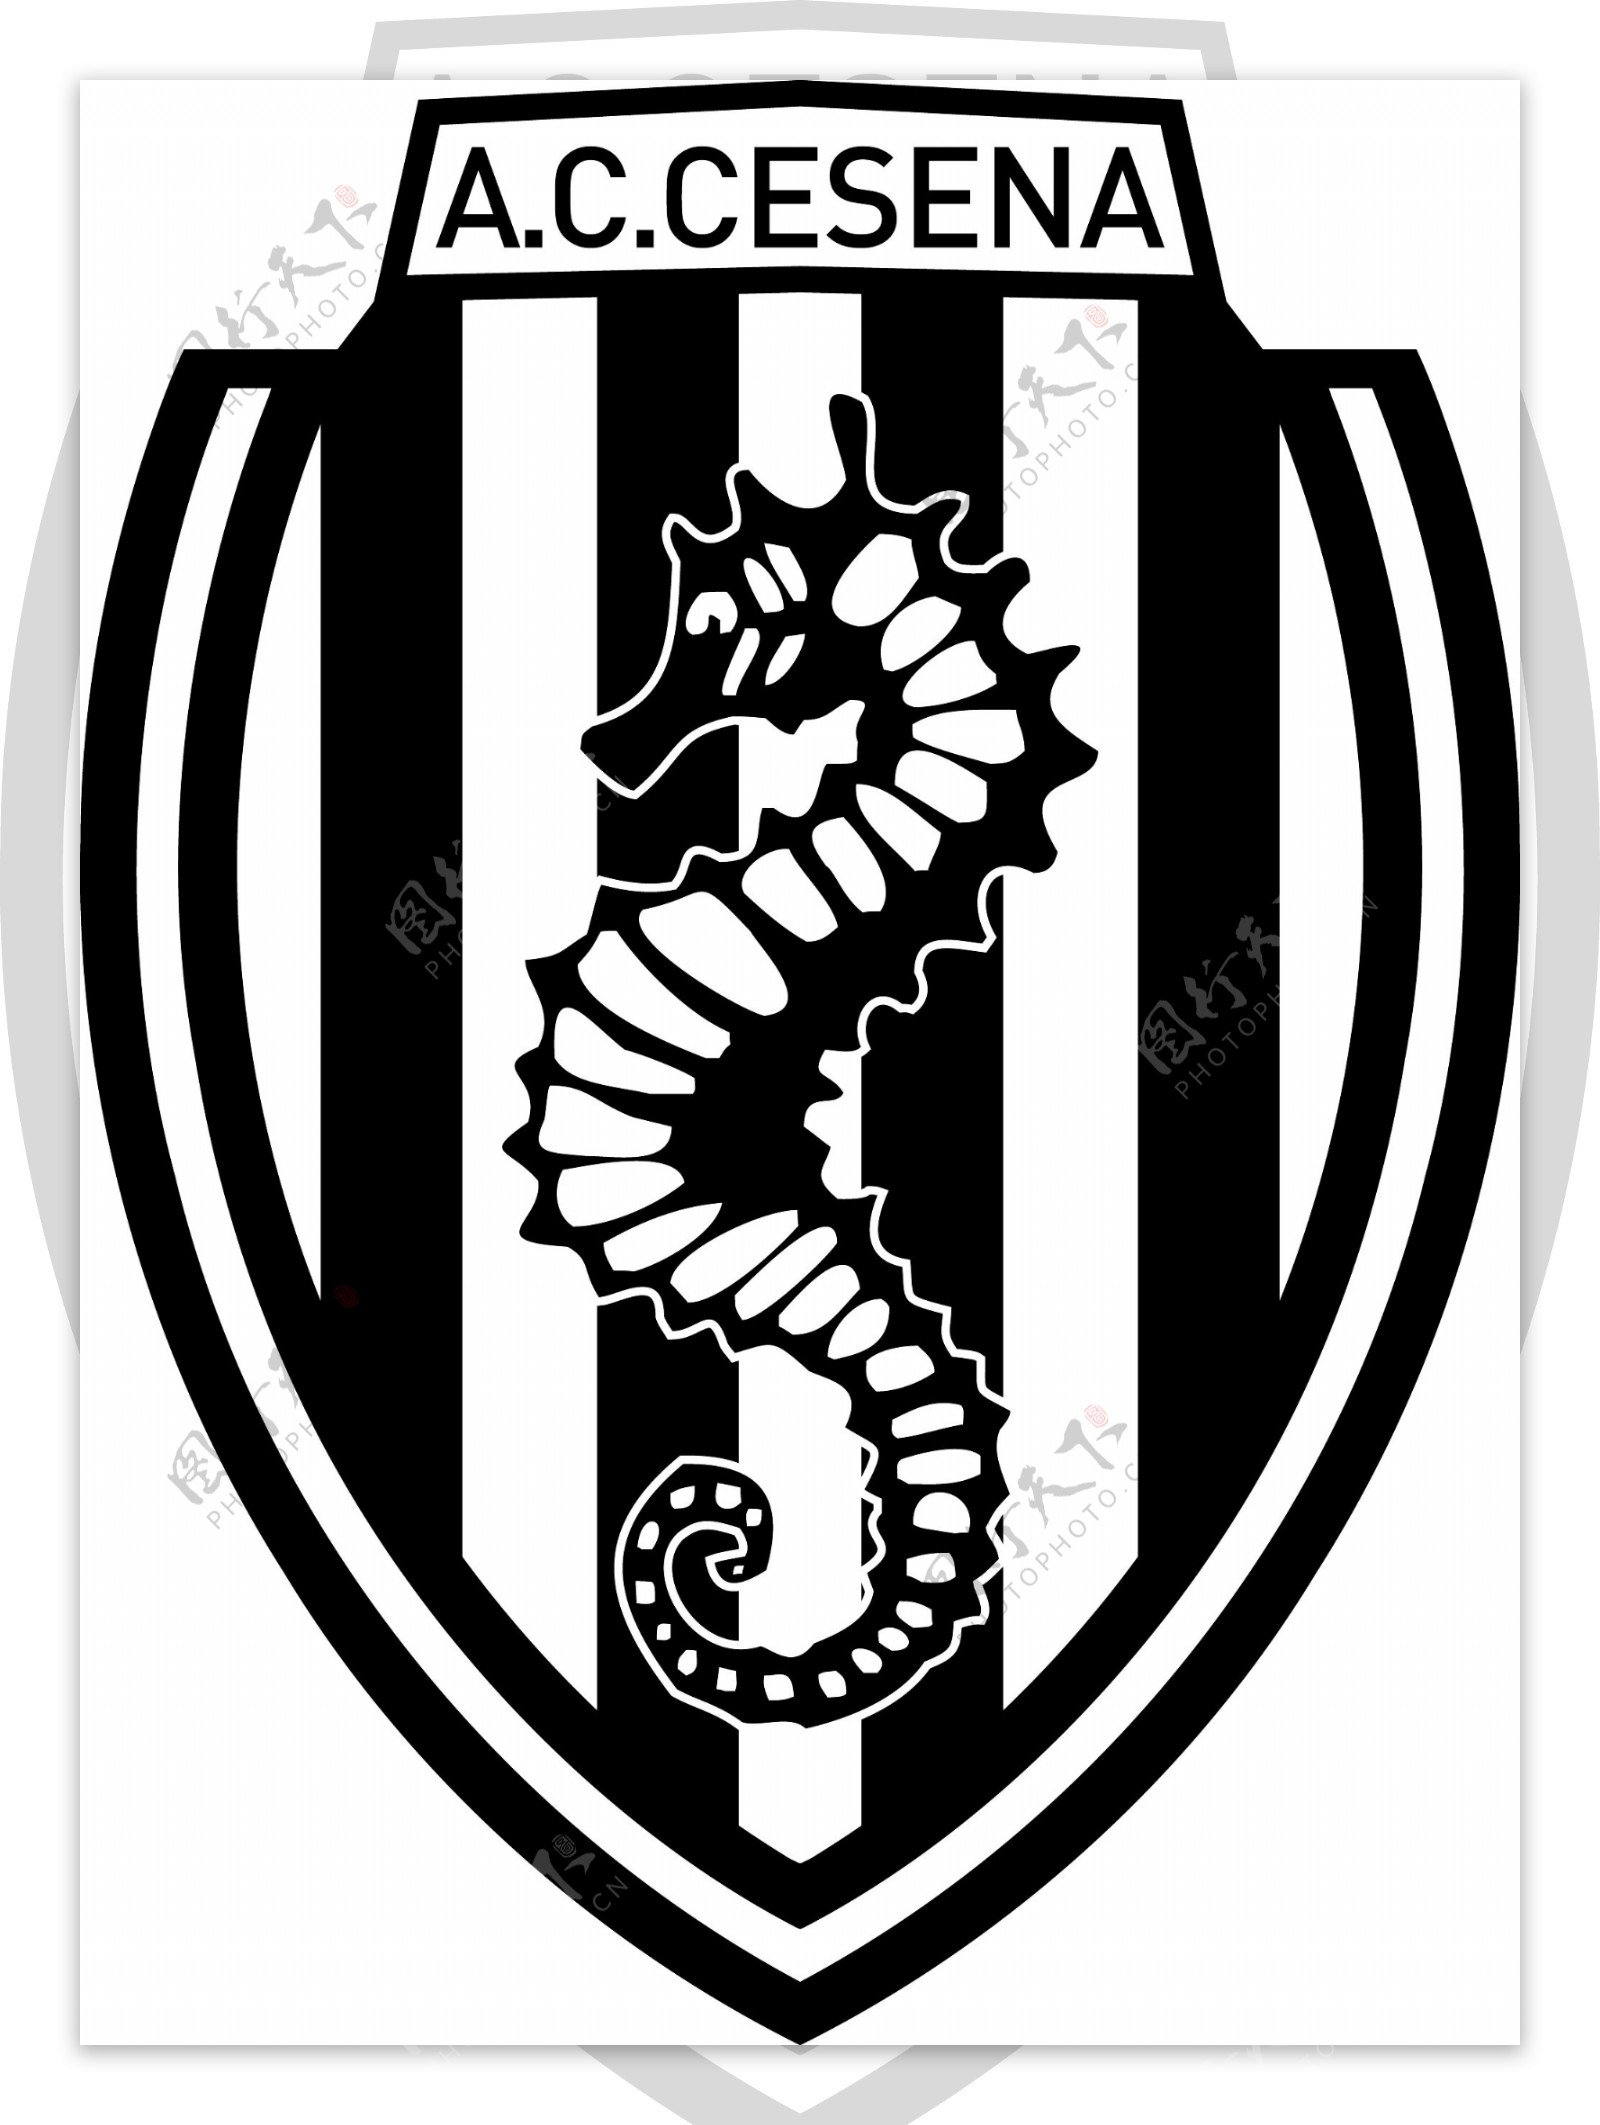 切塞纳足球俱乐部徽标图片